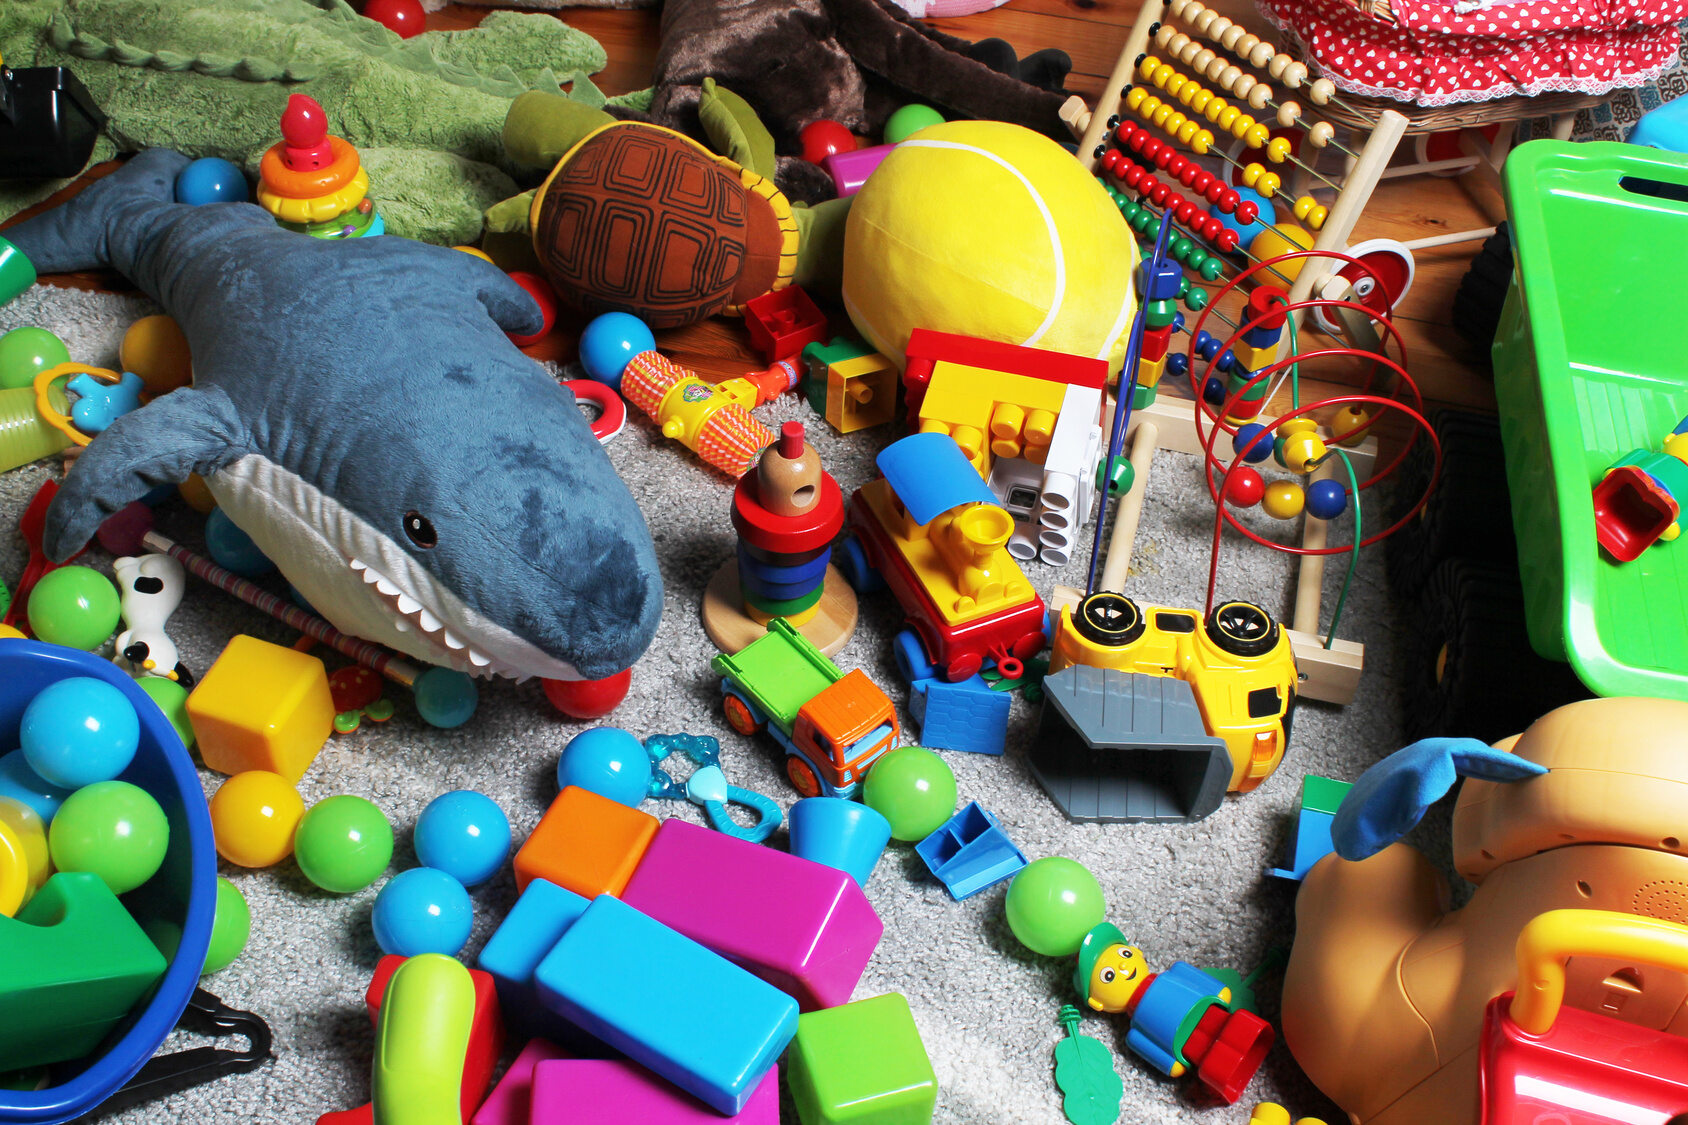 Игра убери игрушки. Разбросанные игрушки. Детская игрушка. Много игрушек. Игрушки в детской комнате.